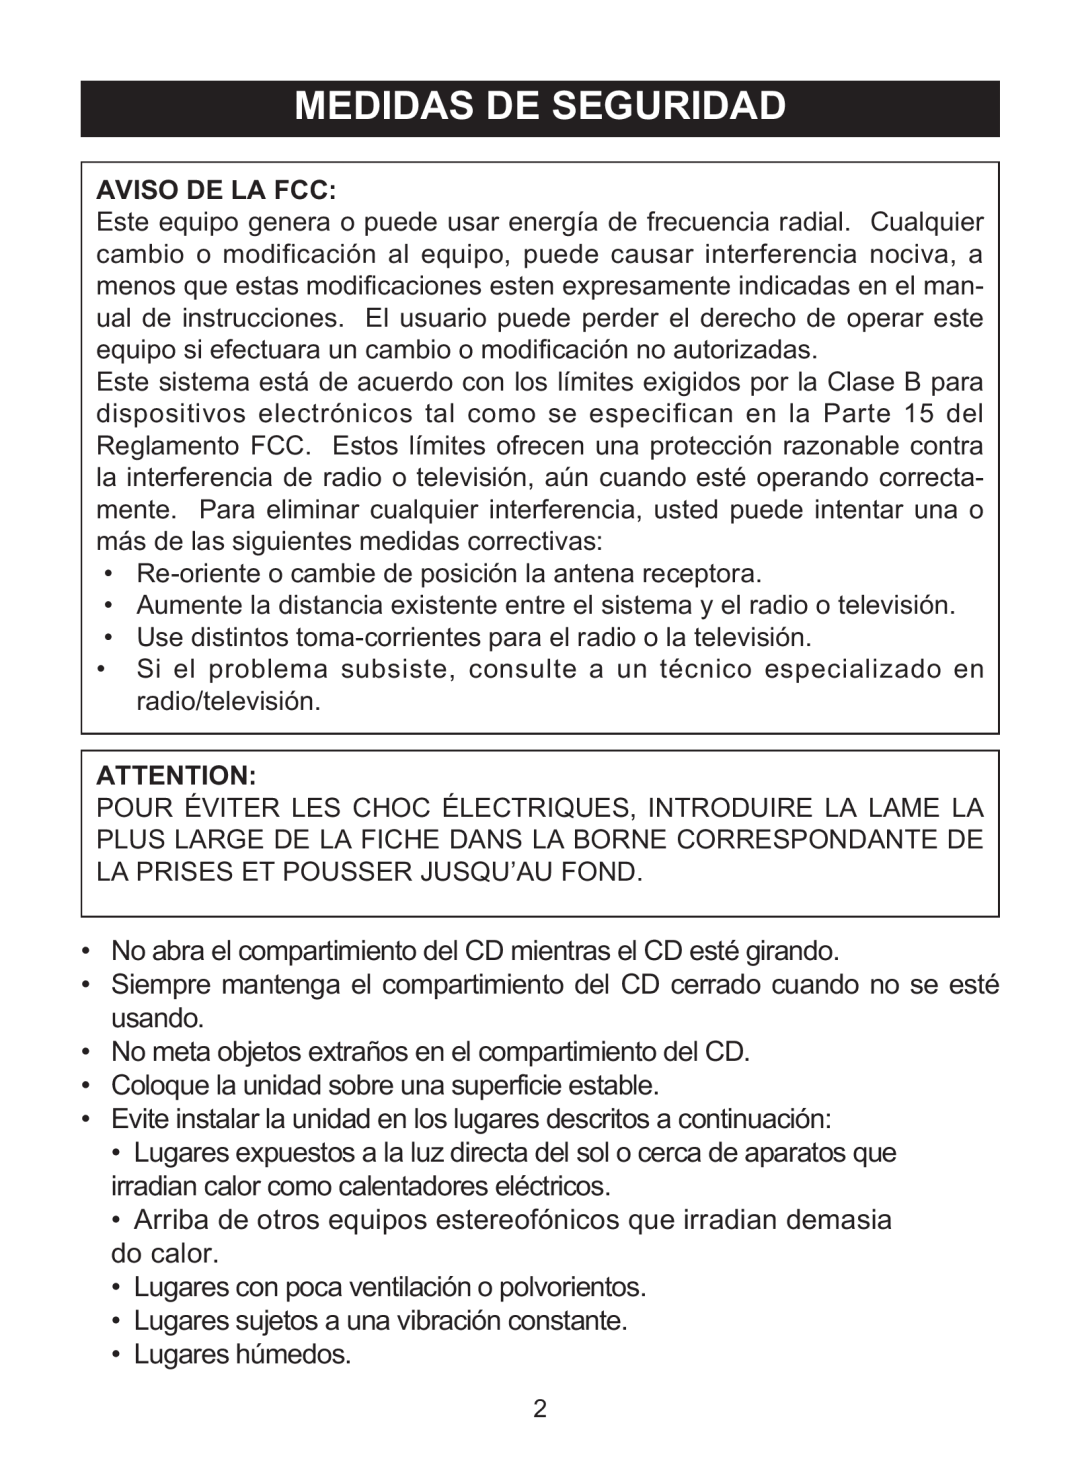 Memorex MD6460 manual Medidas De Seguridad, Aviso De La Fcc 